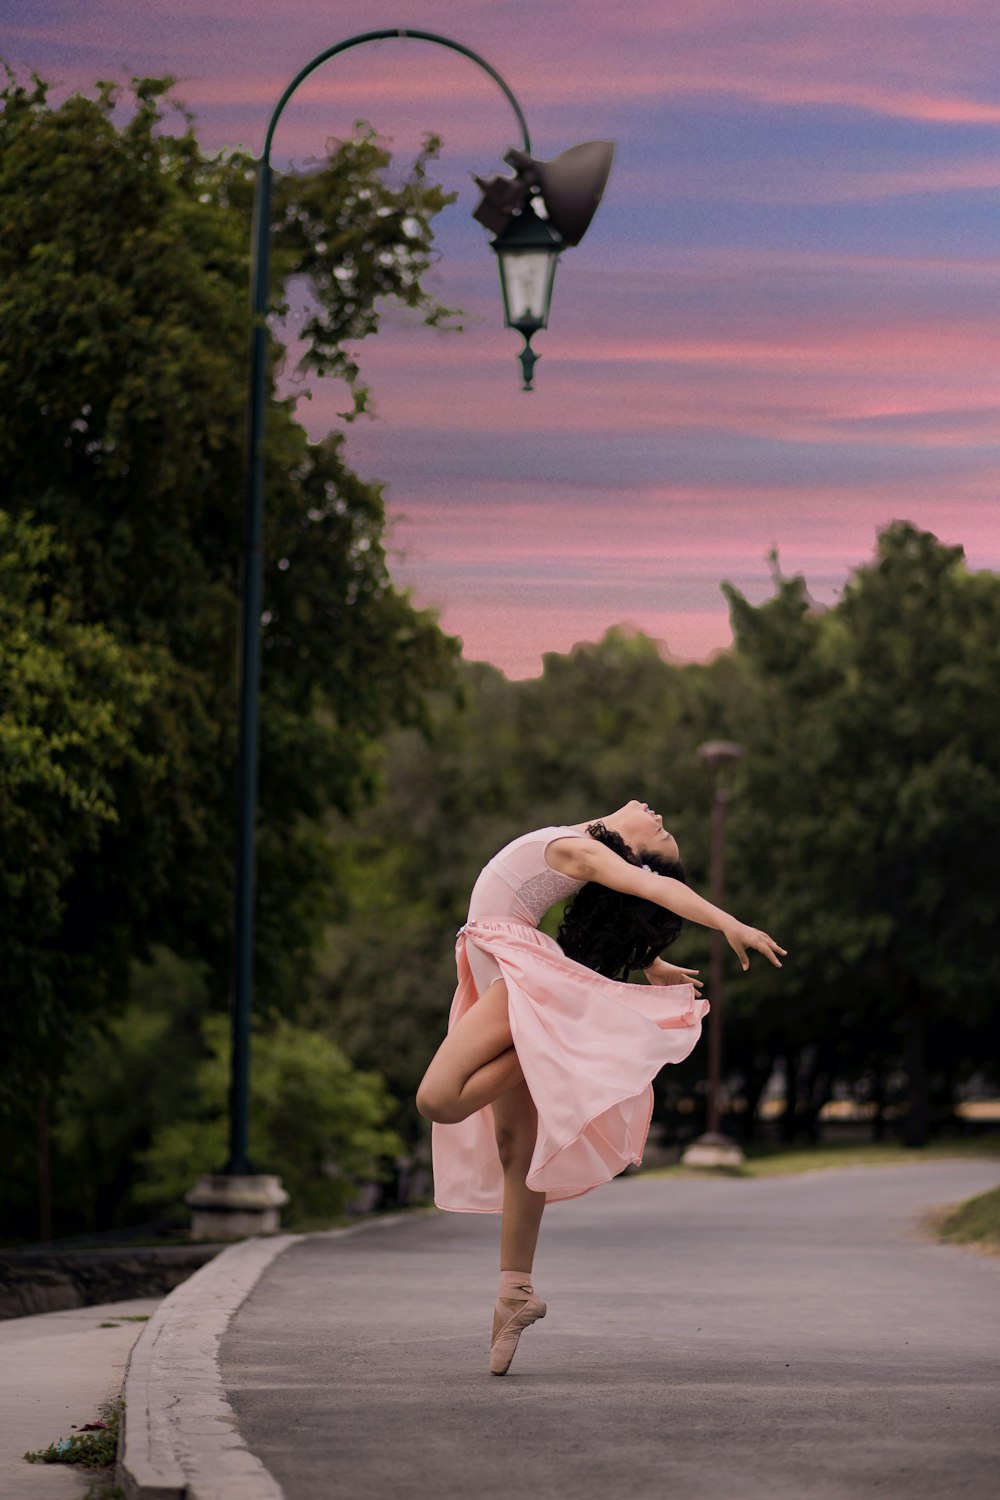 ballet dancer on road beside street lamp